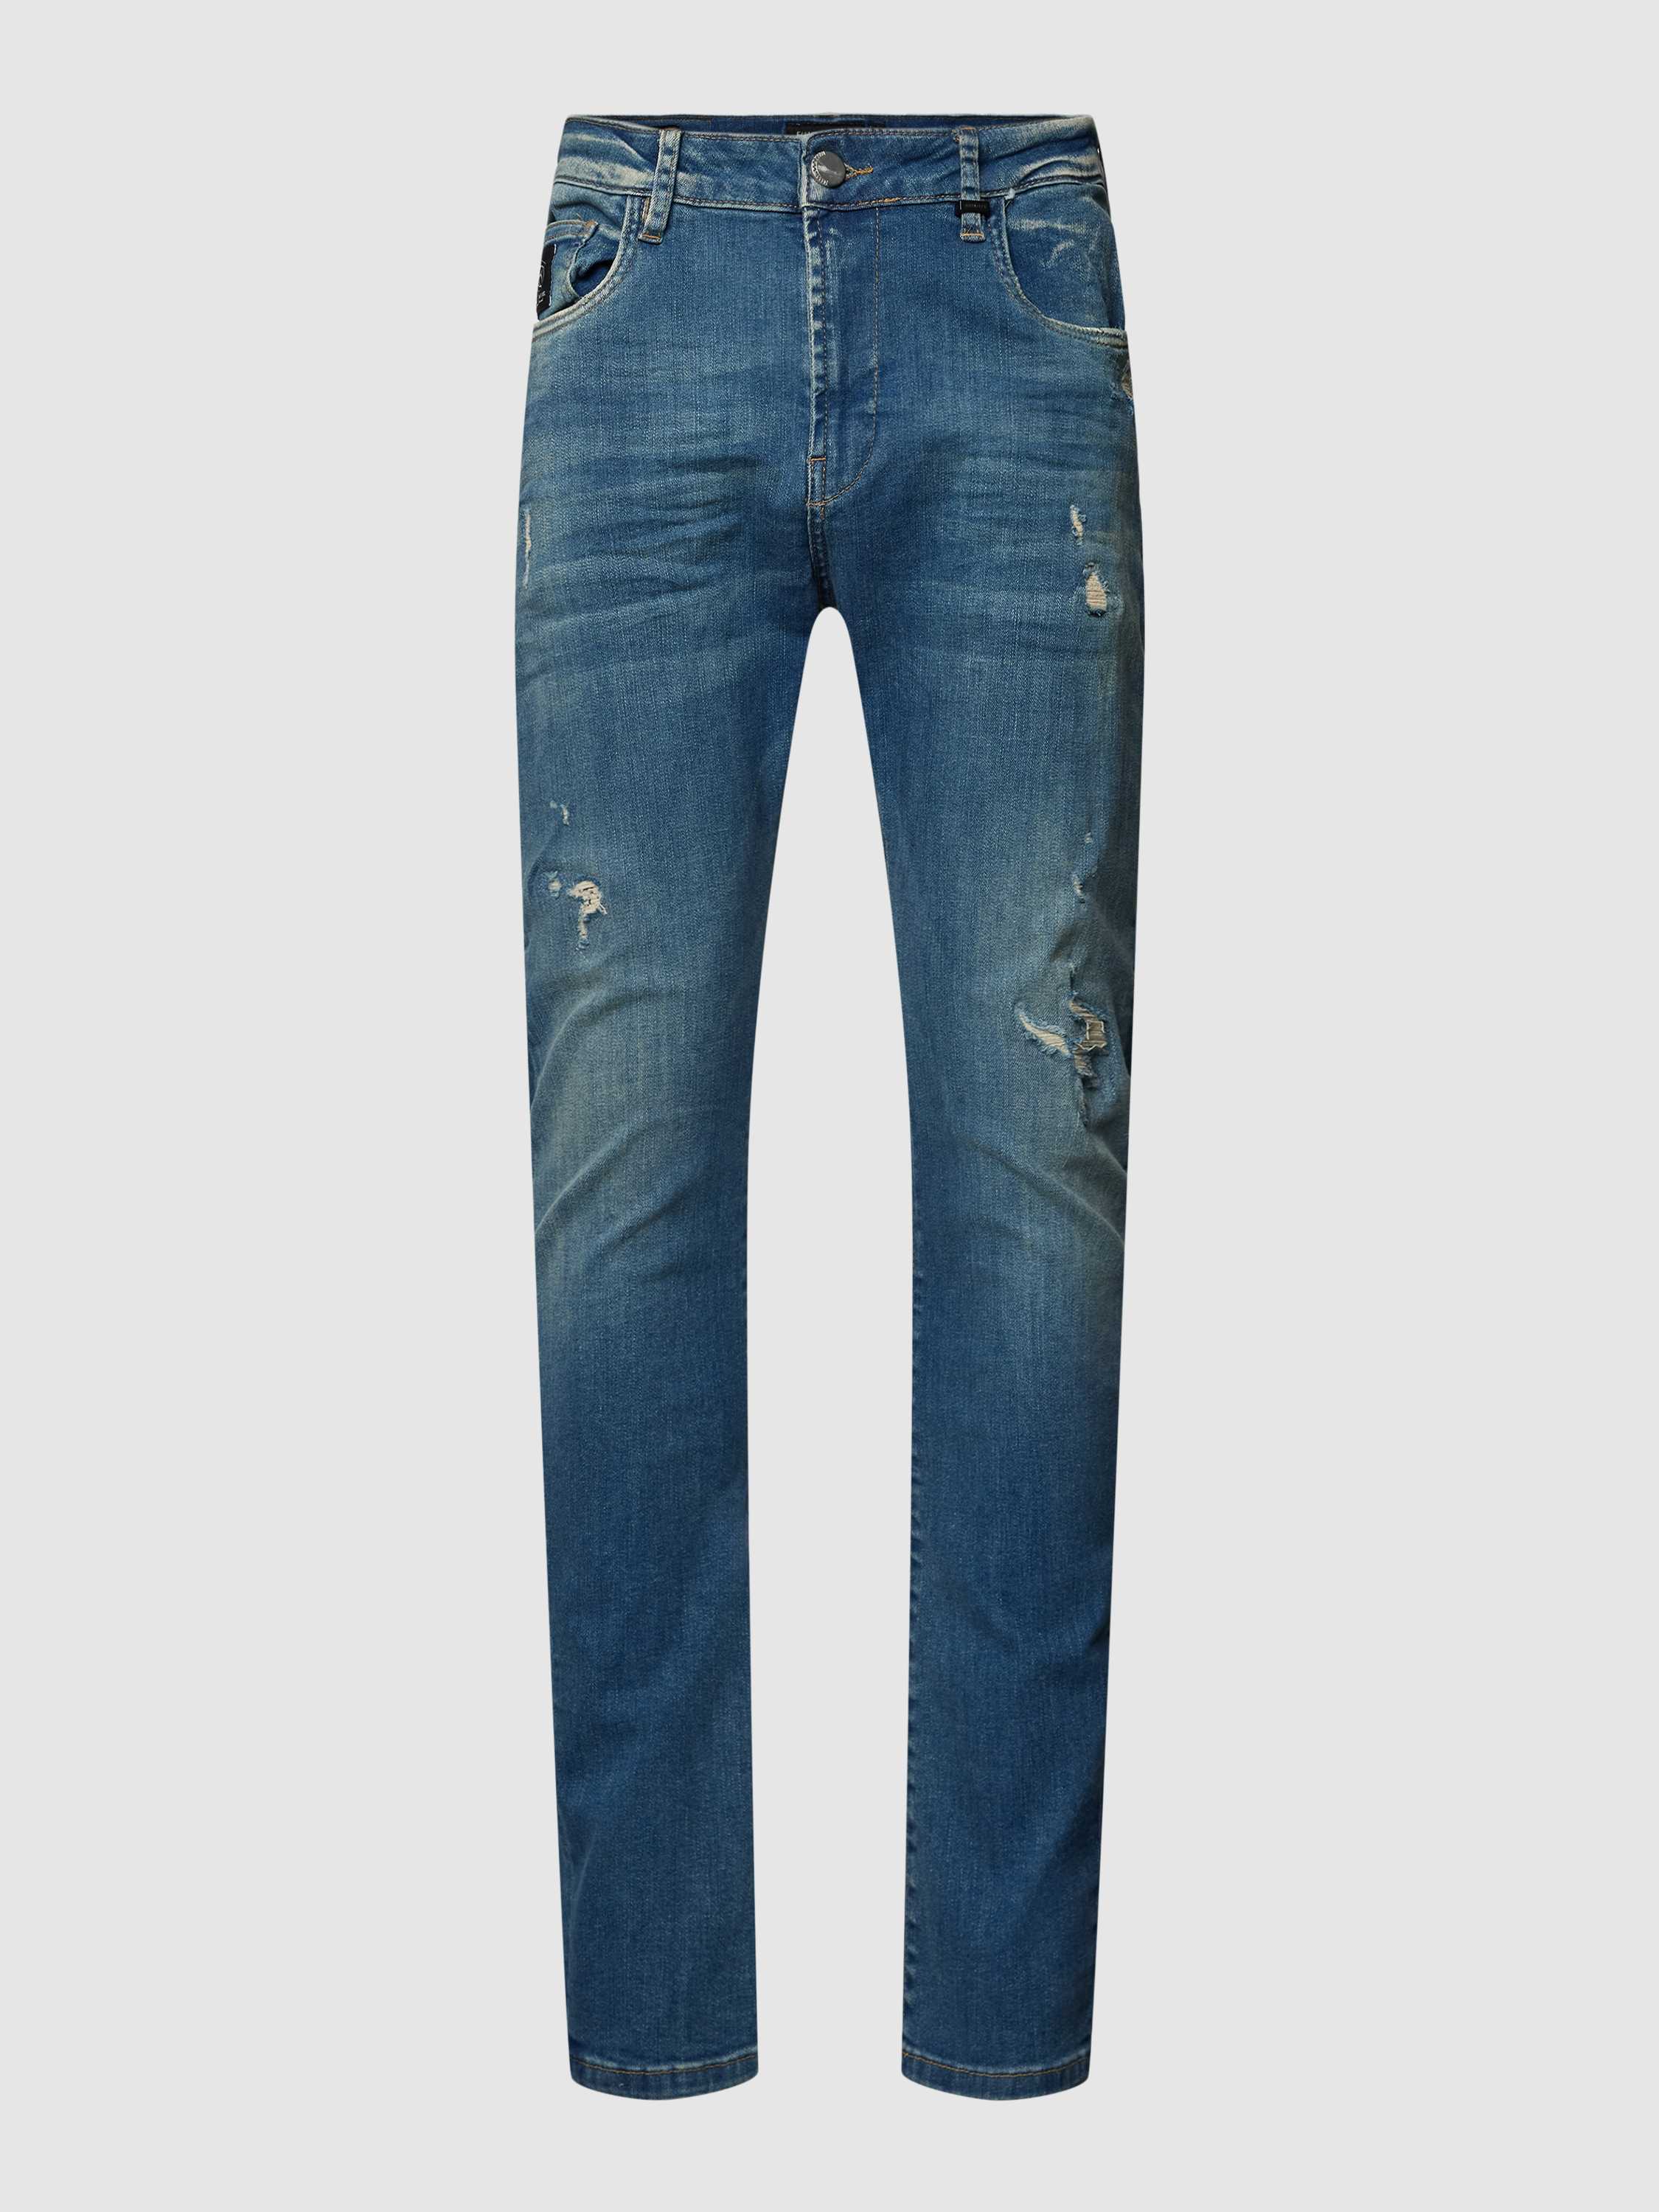 ELIAS RUMELIS Jeans in used-look model 'Noel'